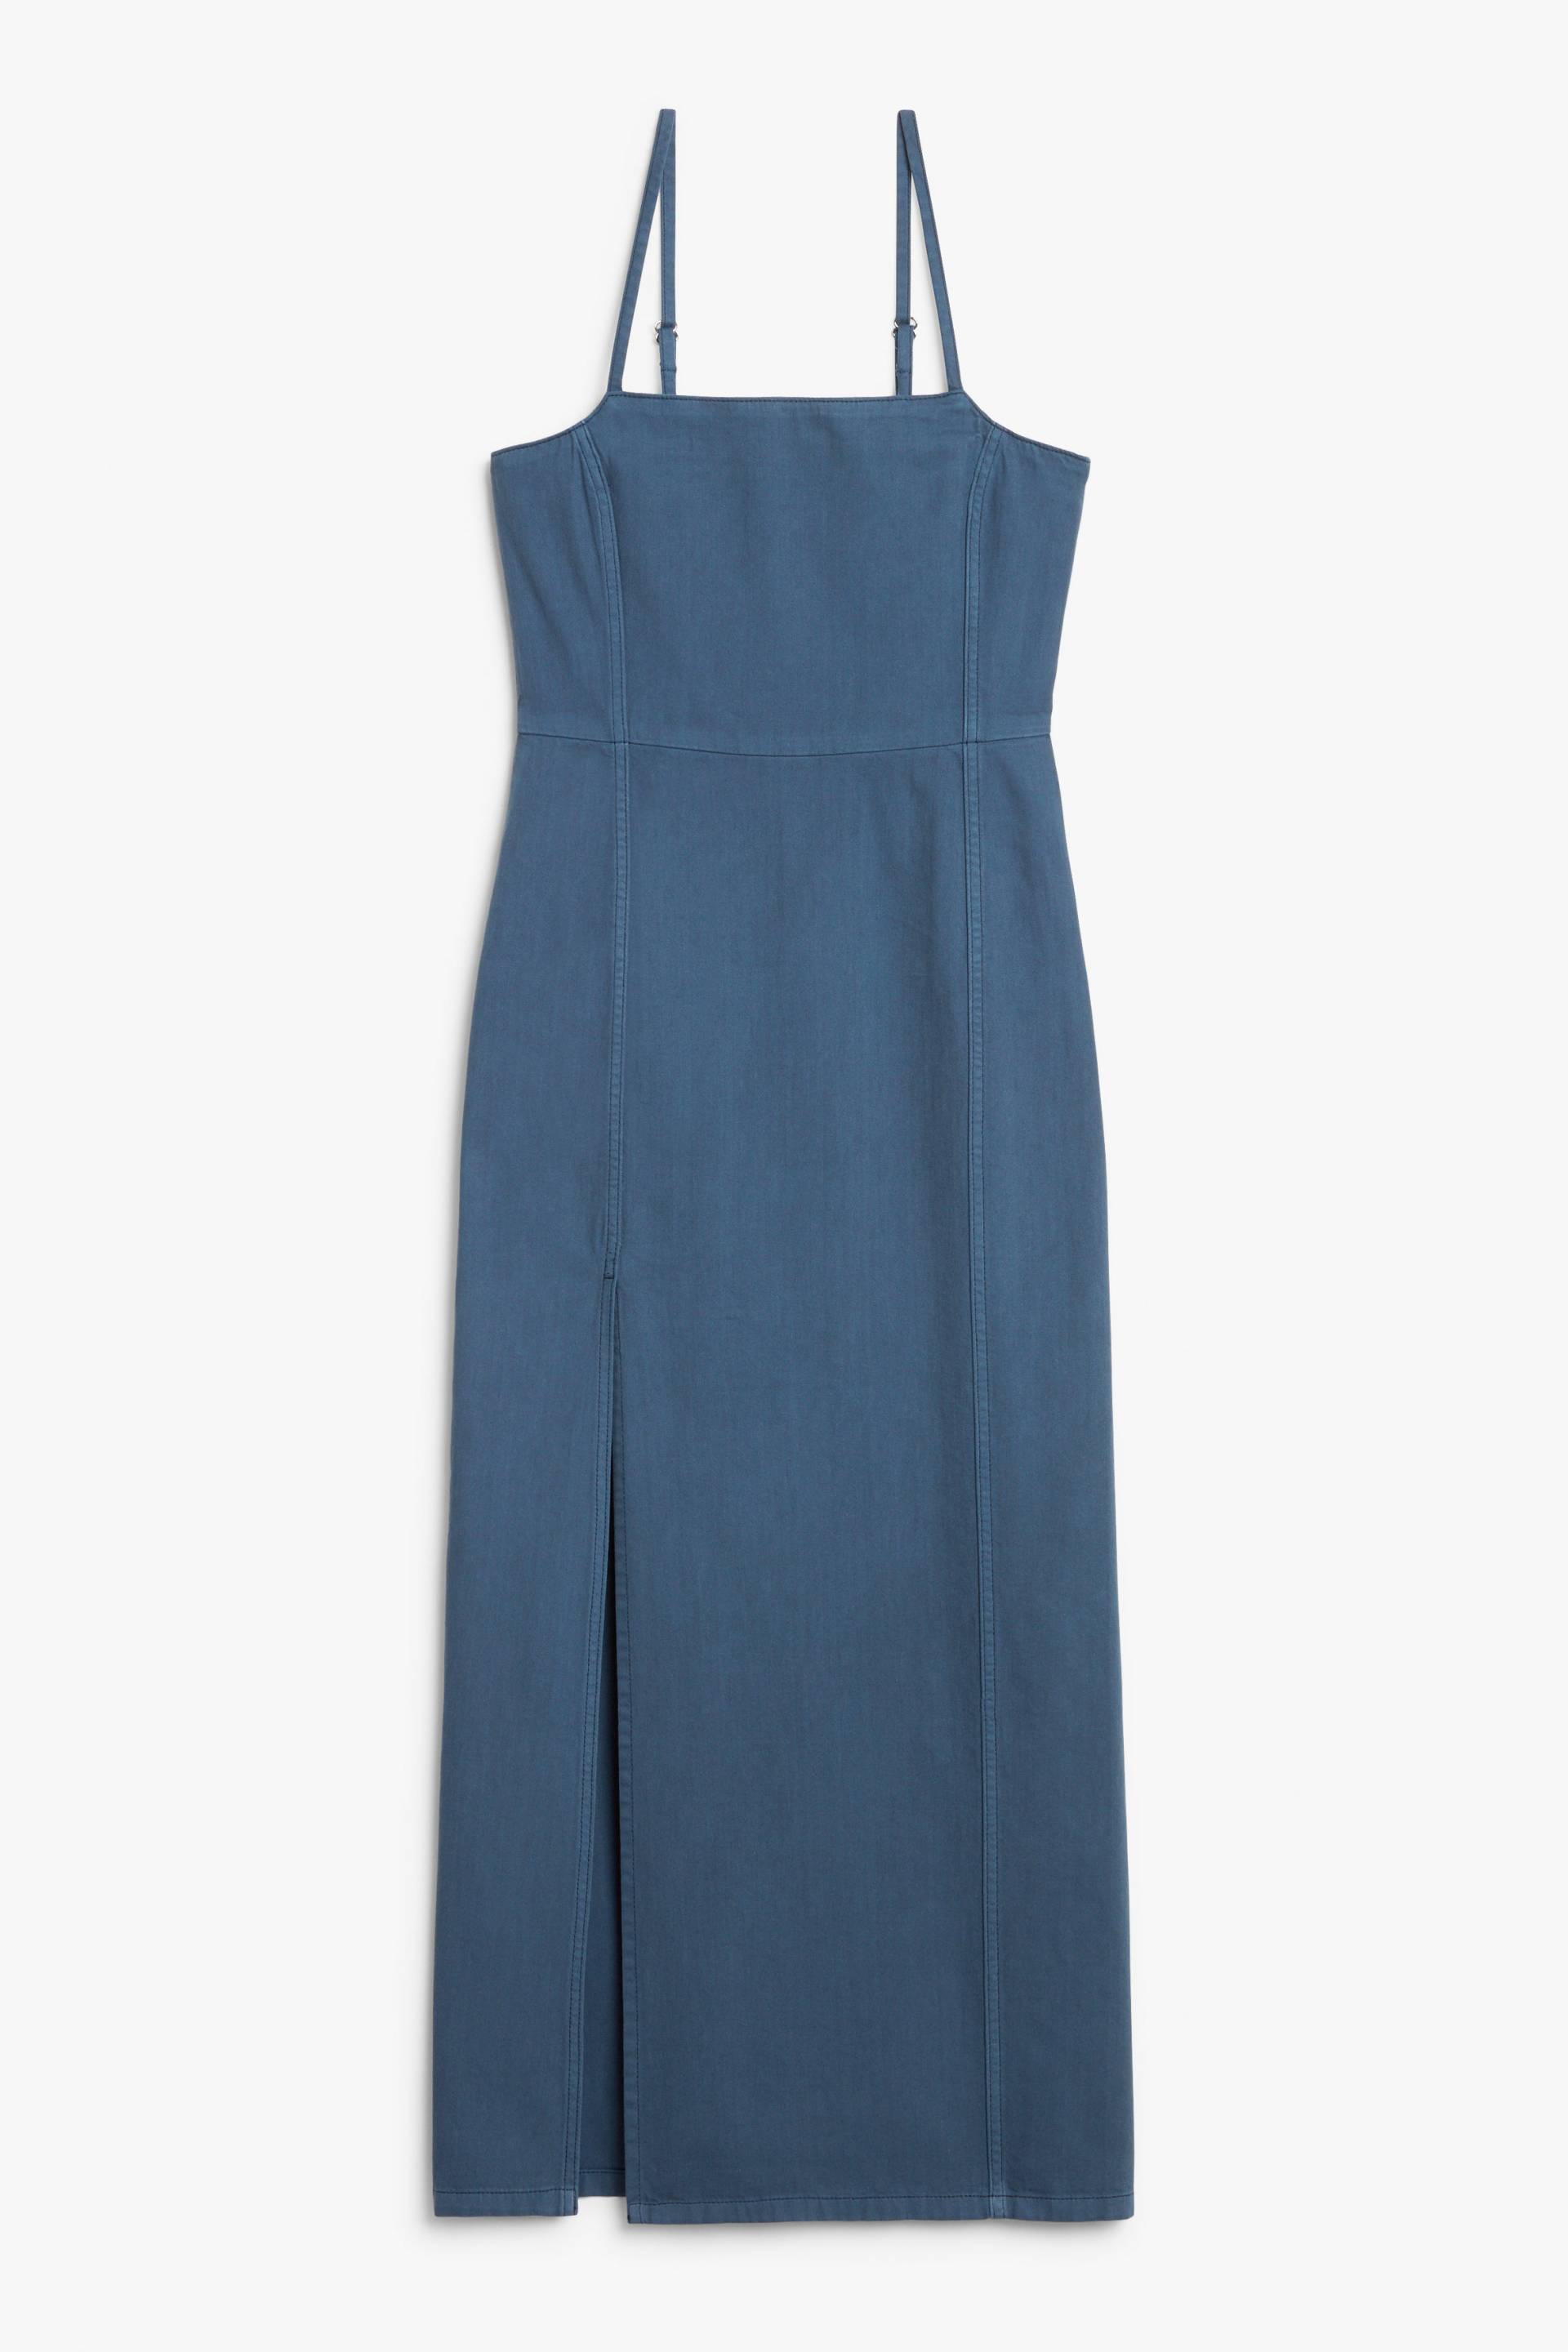 Monki Jeanskleid in Maxi-Länge mit Karree-Ausschnitt Mittelblau, Alltagskleider Größe 42. Farbe: Medium blue von Monki